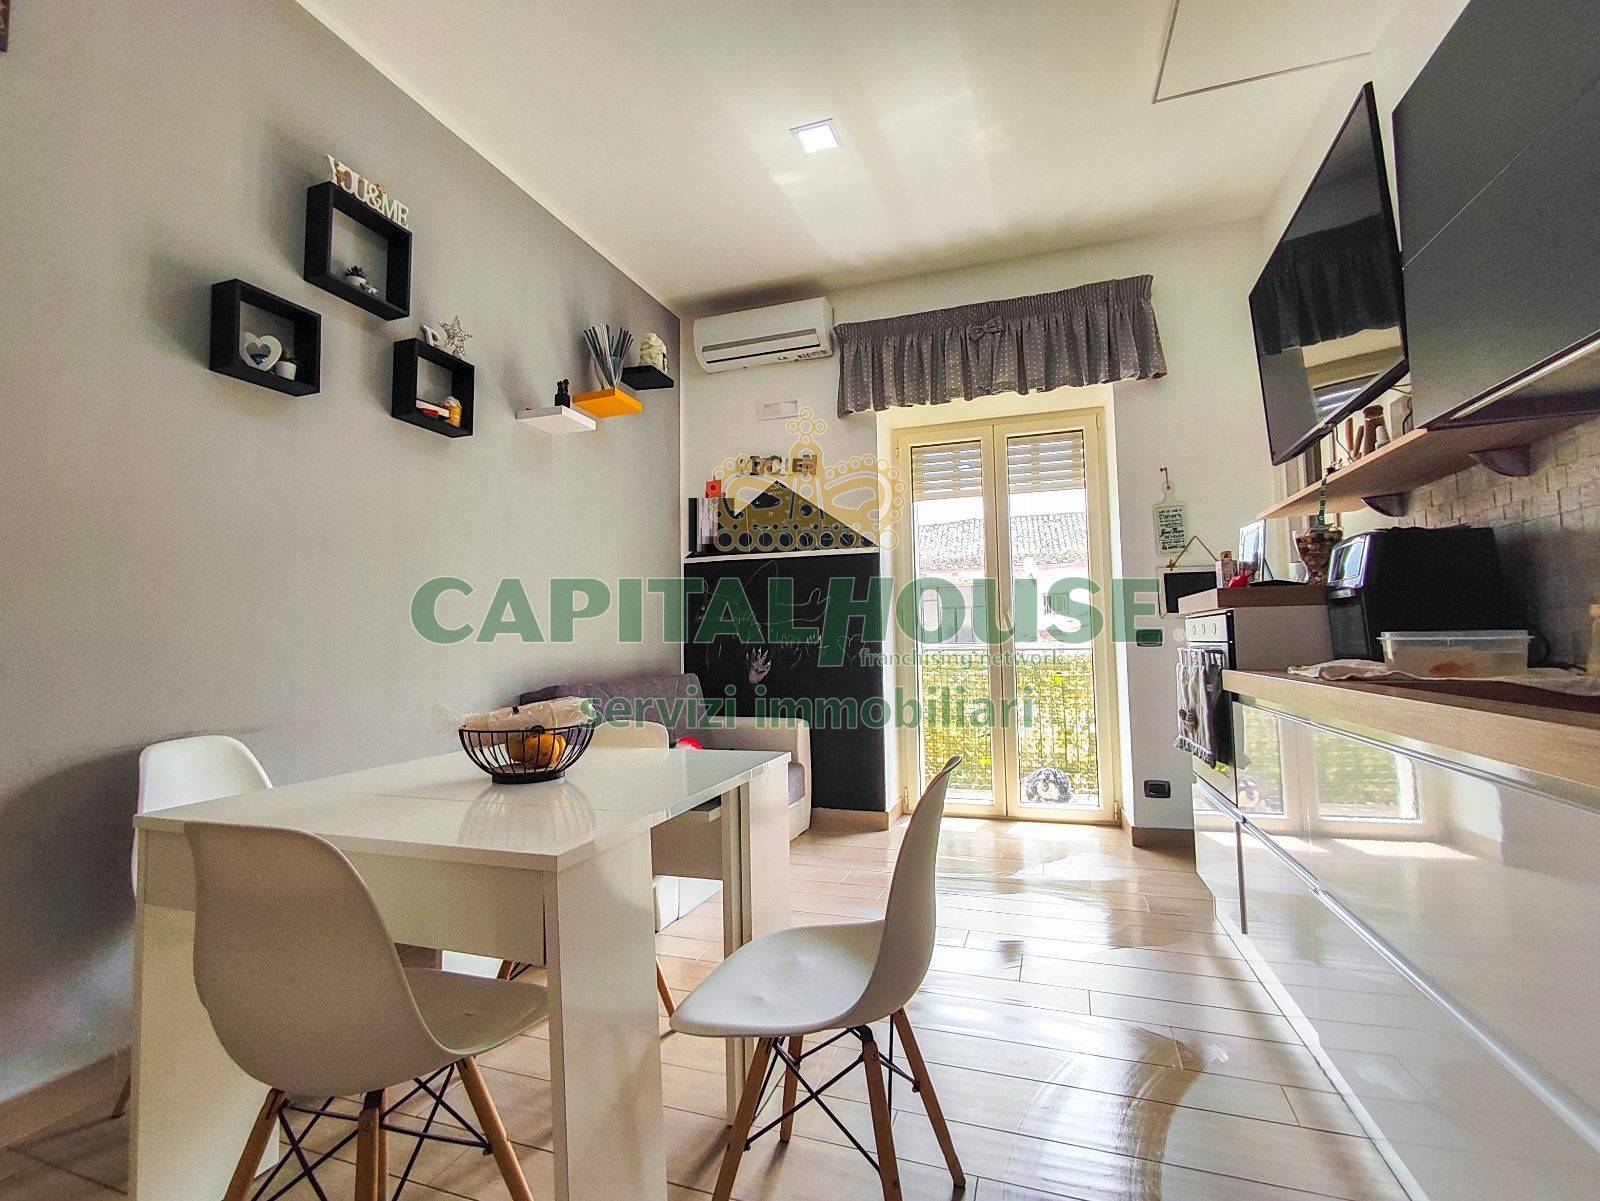 Appartamento in vendita a Capua, 3 locali, prezzo € 59.000 | PortaleAgenzieImmobiliari.it